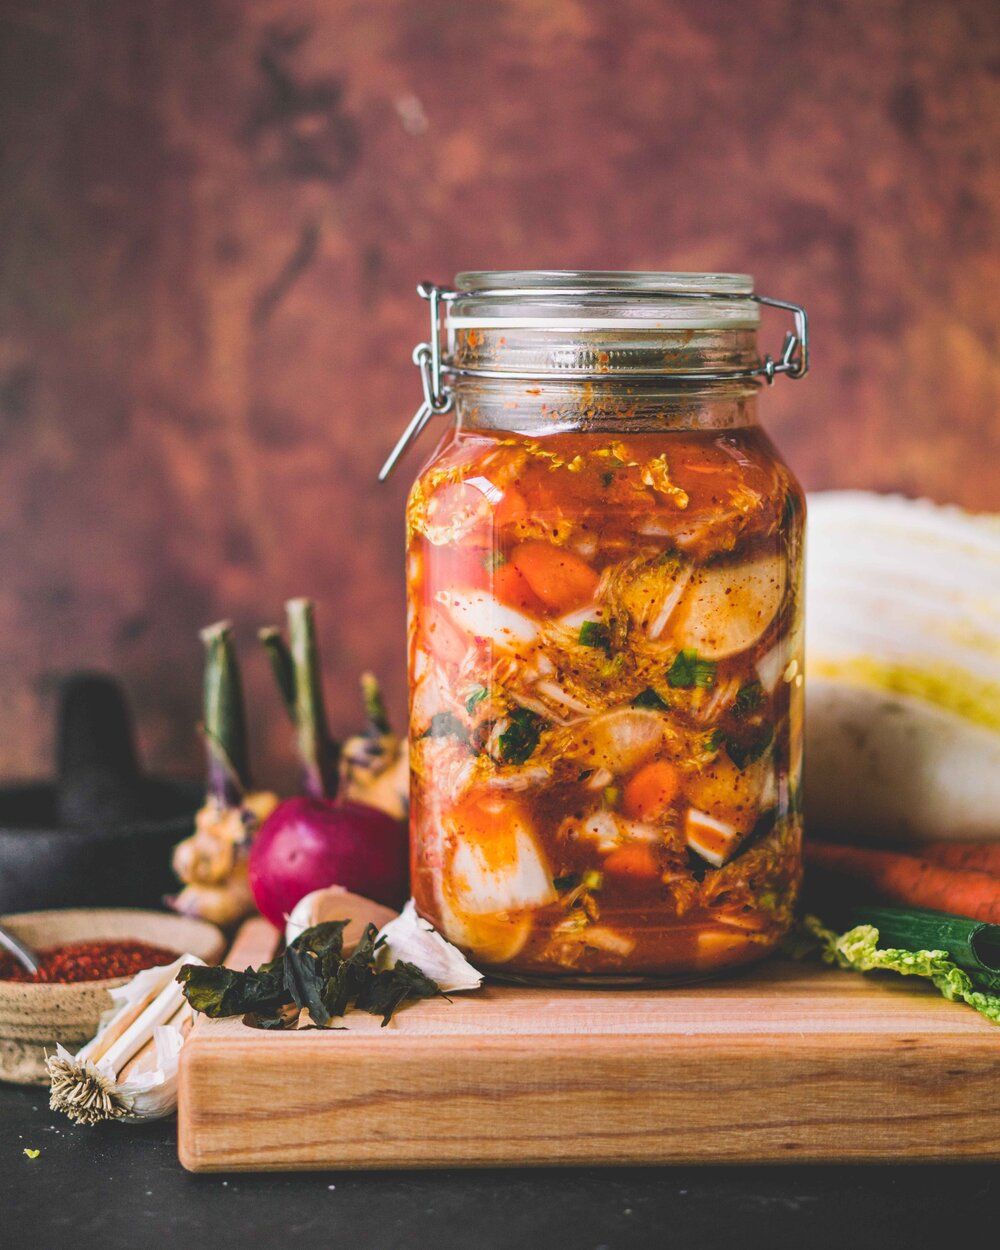 Kimchi végane 101 - Matériel et ingrédients nécessairespour le réaliser soi-même